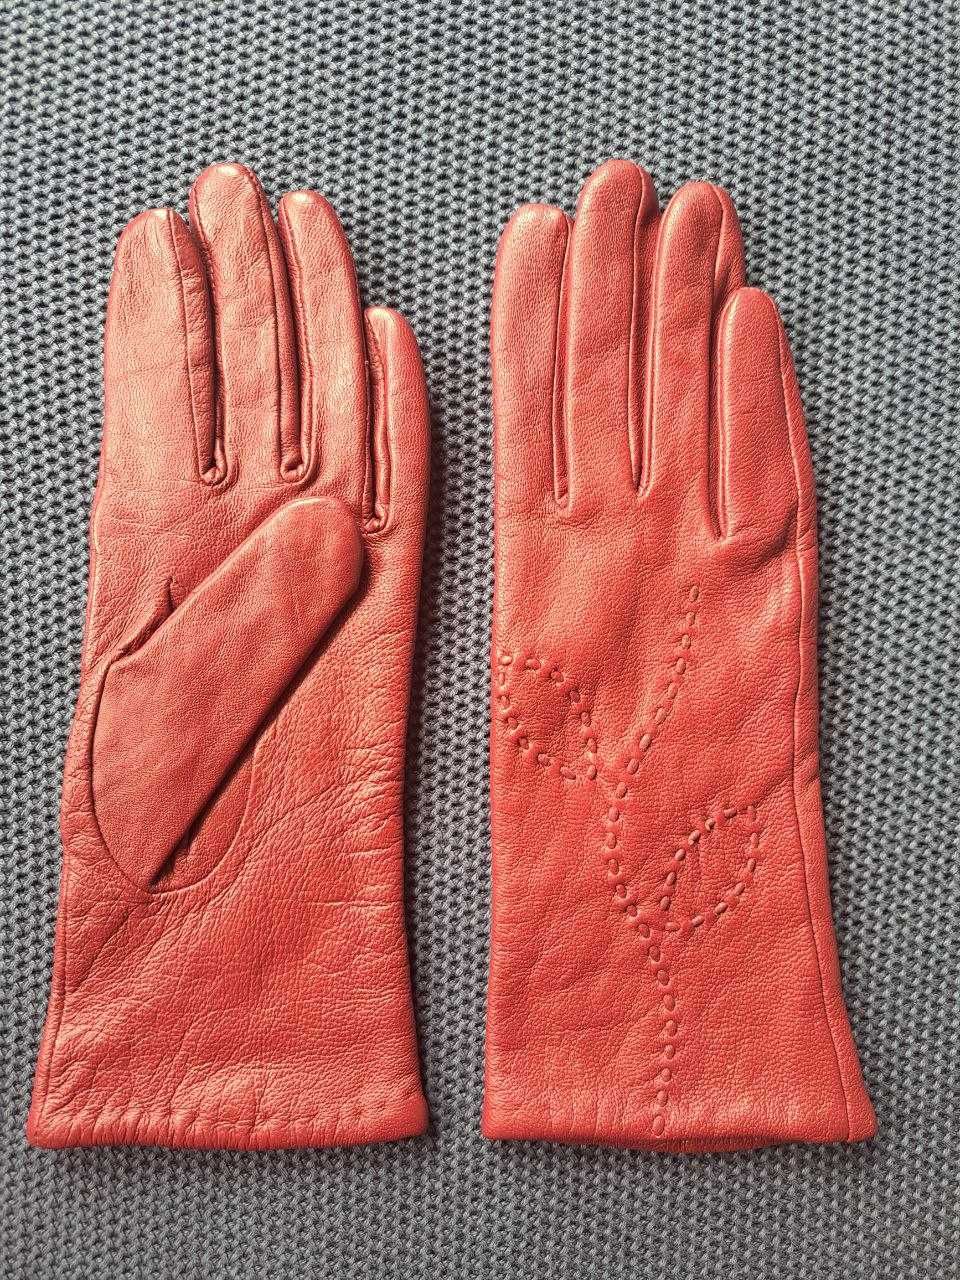 Kolorowe rękawiczki skórzane (kolor bordowy) , r. 6